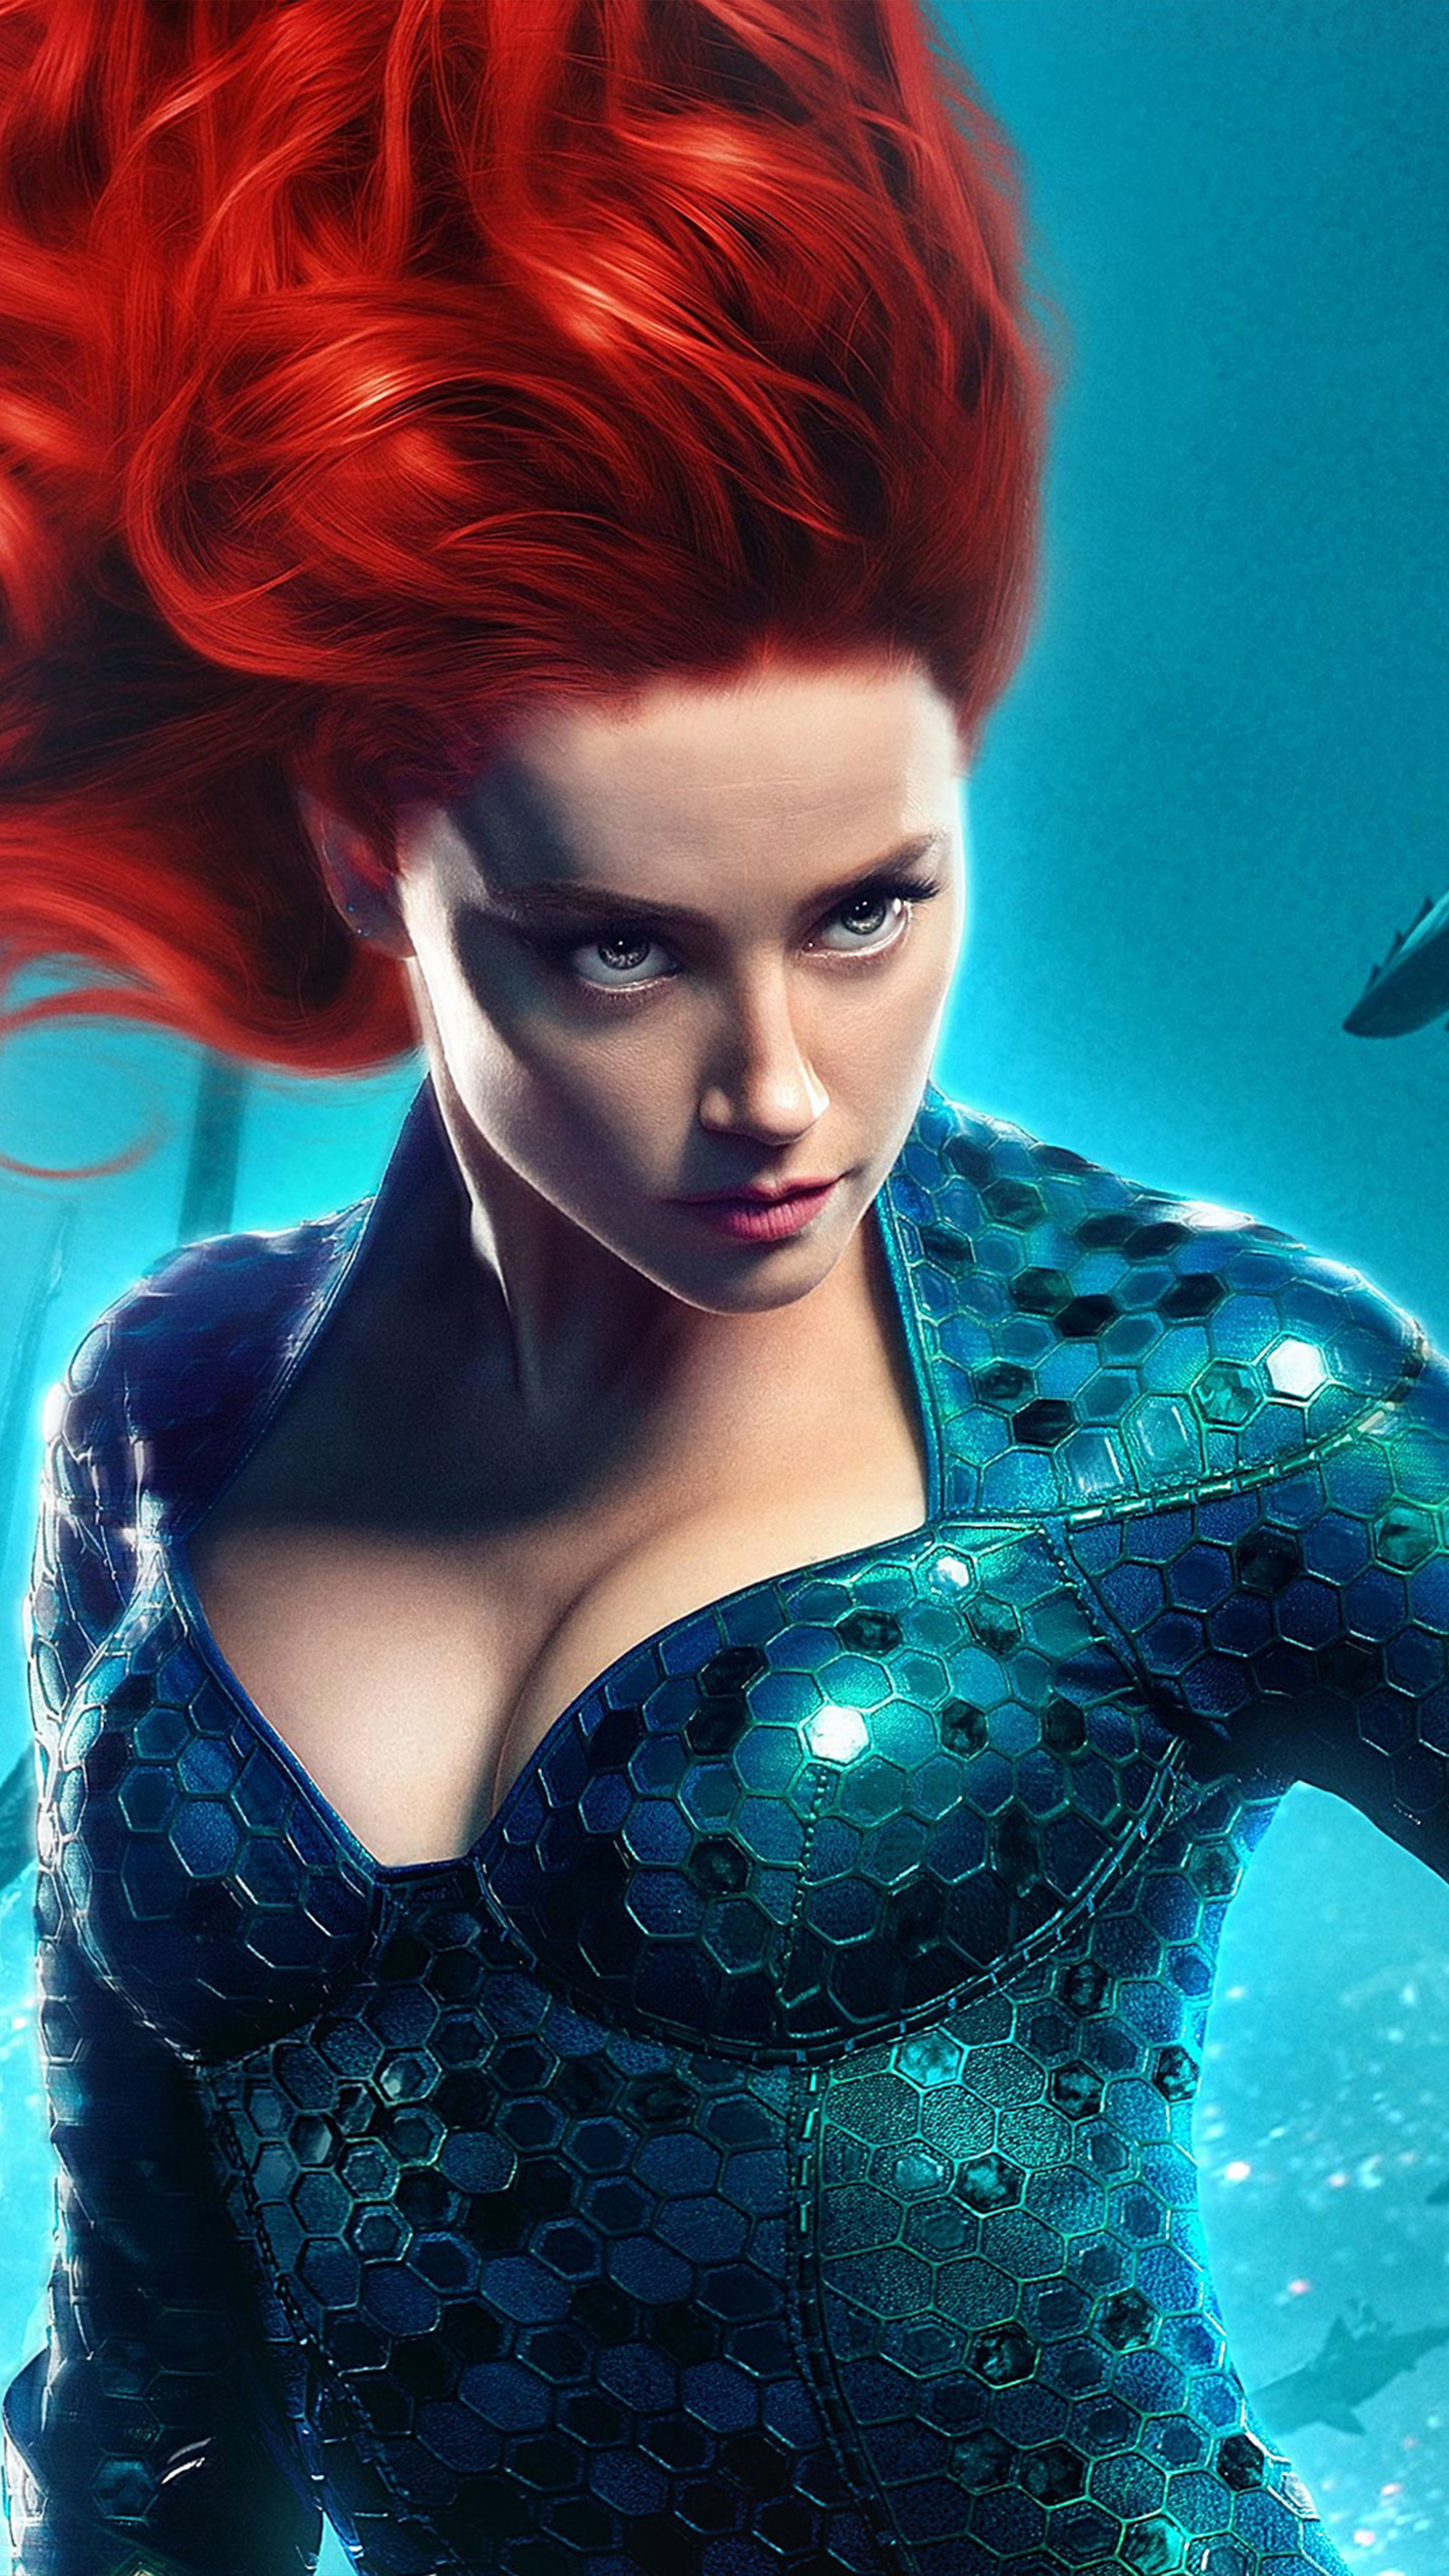 Download Amber Heard As Mera In Aquaman 2018 Free Pure 4K Ultra HD Mobile Wallpaper